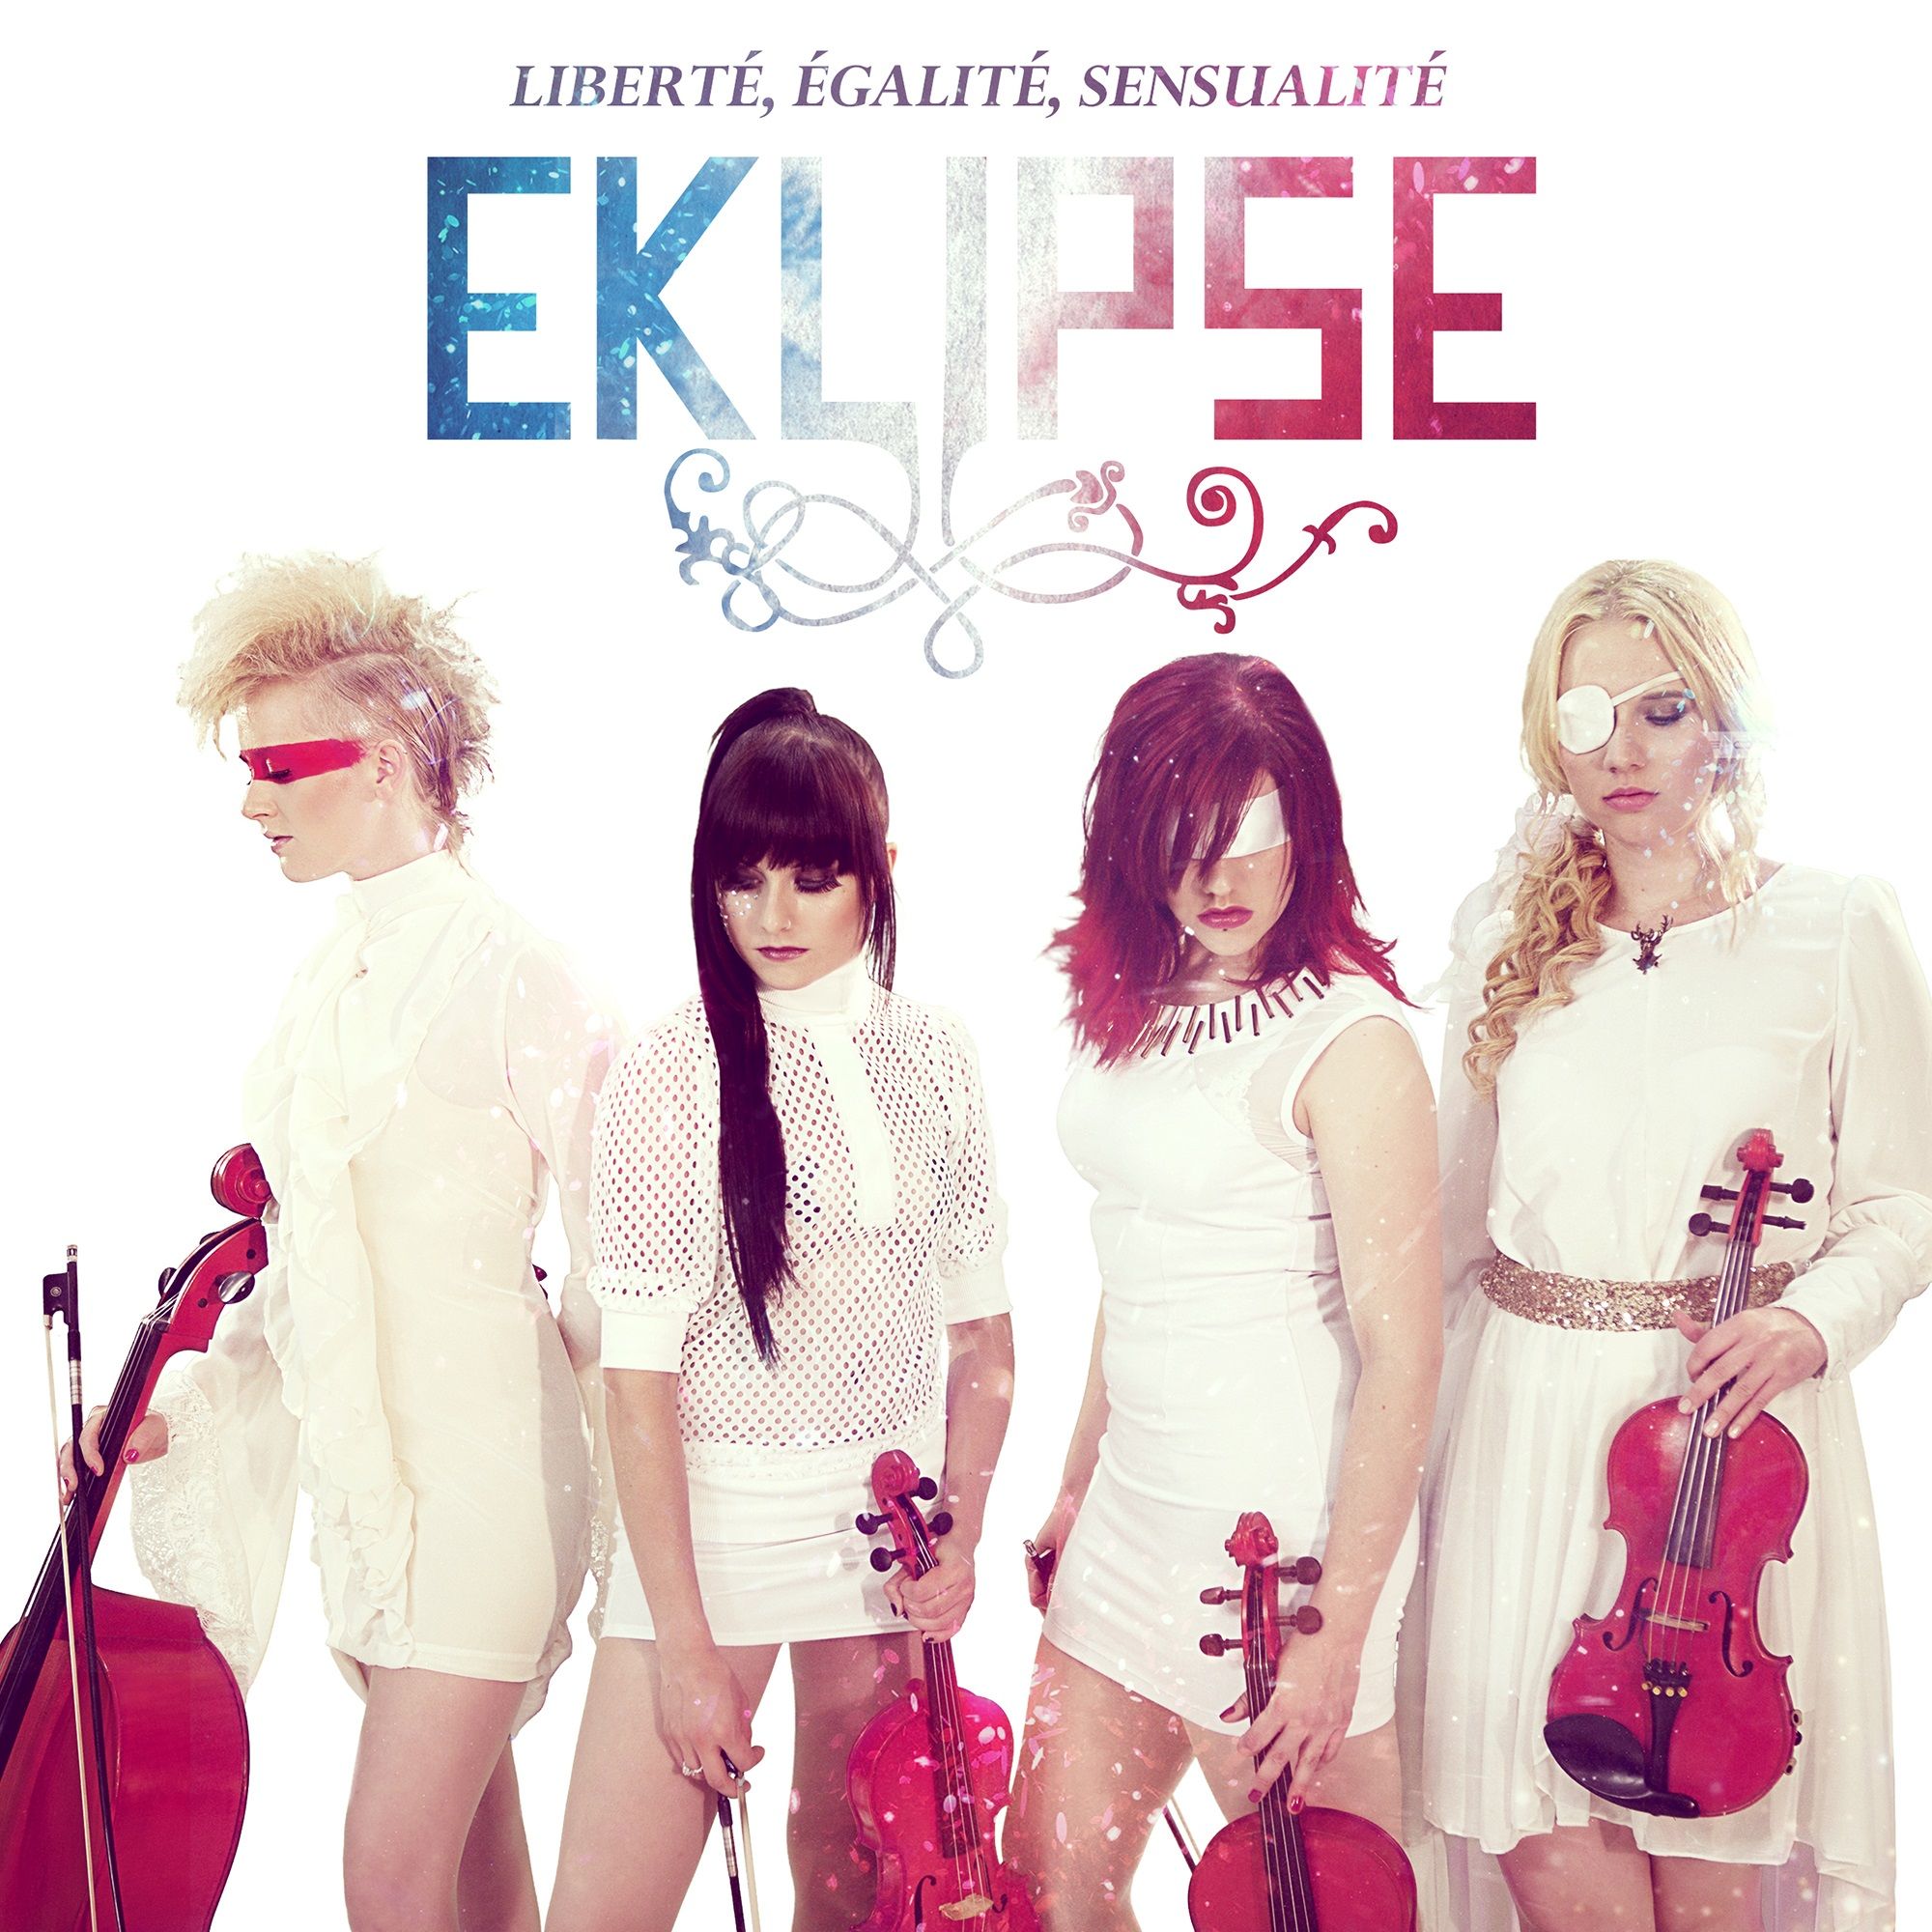 EKLIPSE Cover Liberté, Egalité, Sensualité